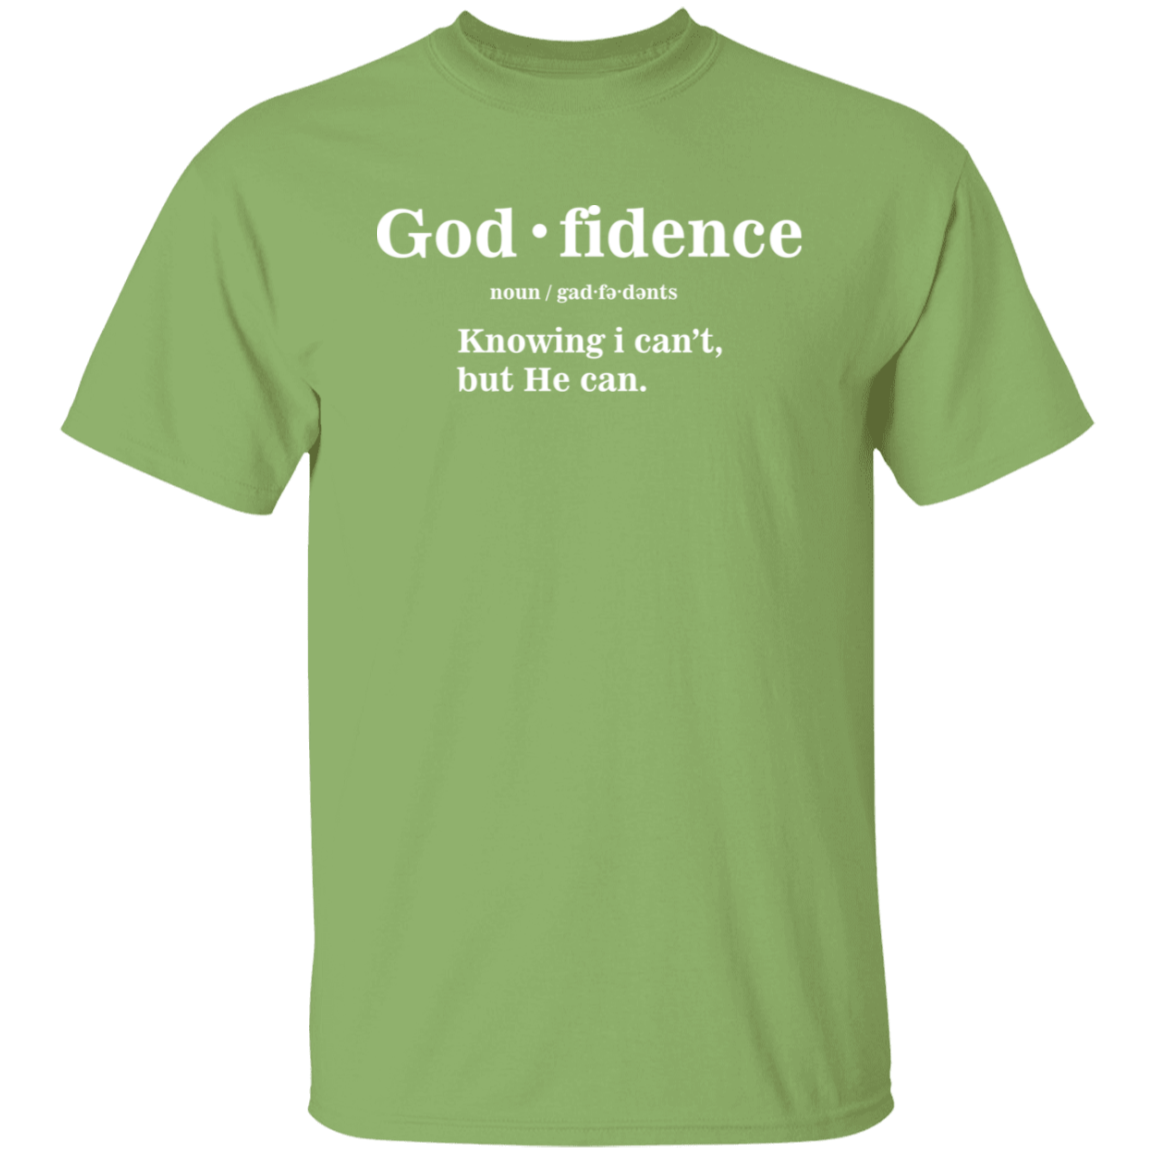 God fidence